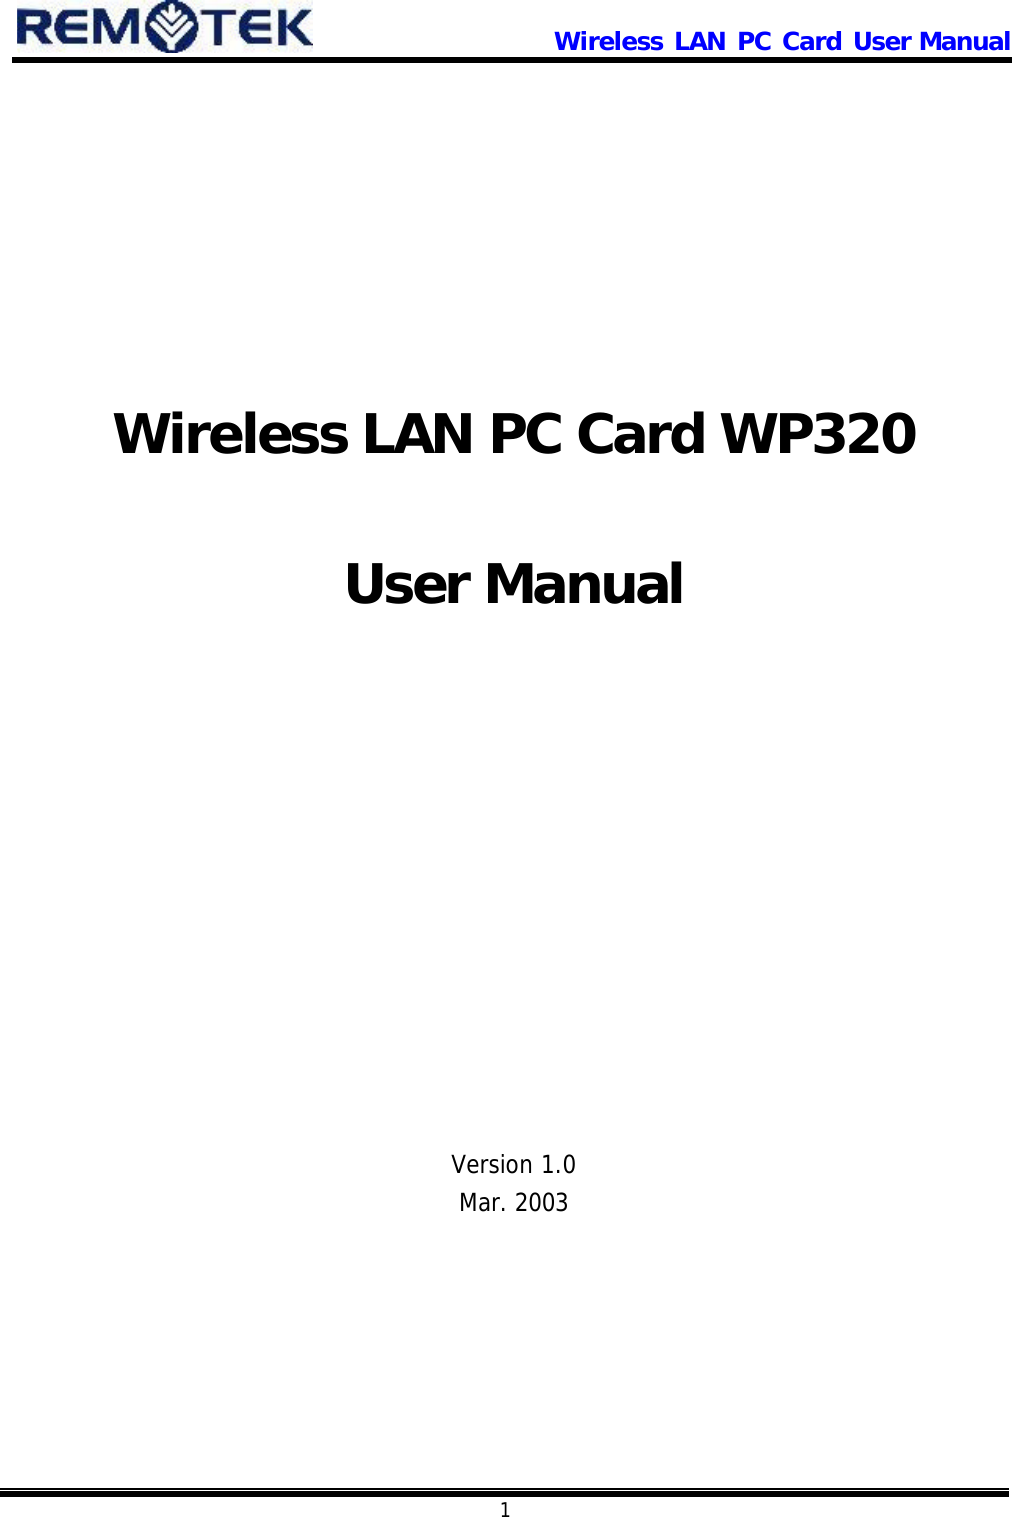                      Wireless LAN PC Card User Manual            1          Wireless LAN PC Card WP320  User Manual               Version 1.0 Mar. 2003 